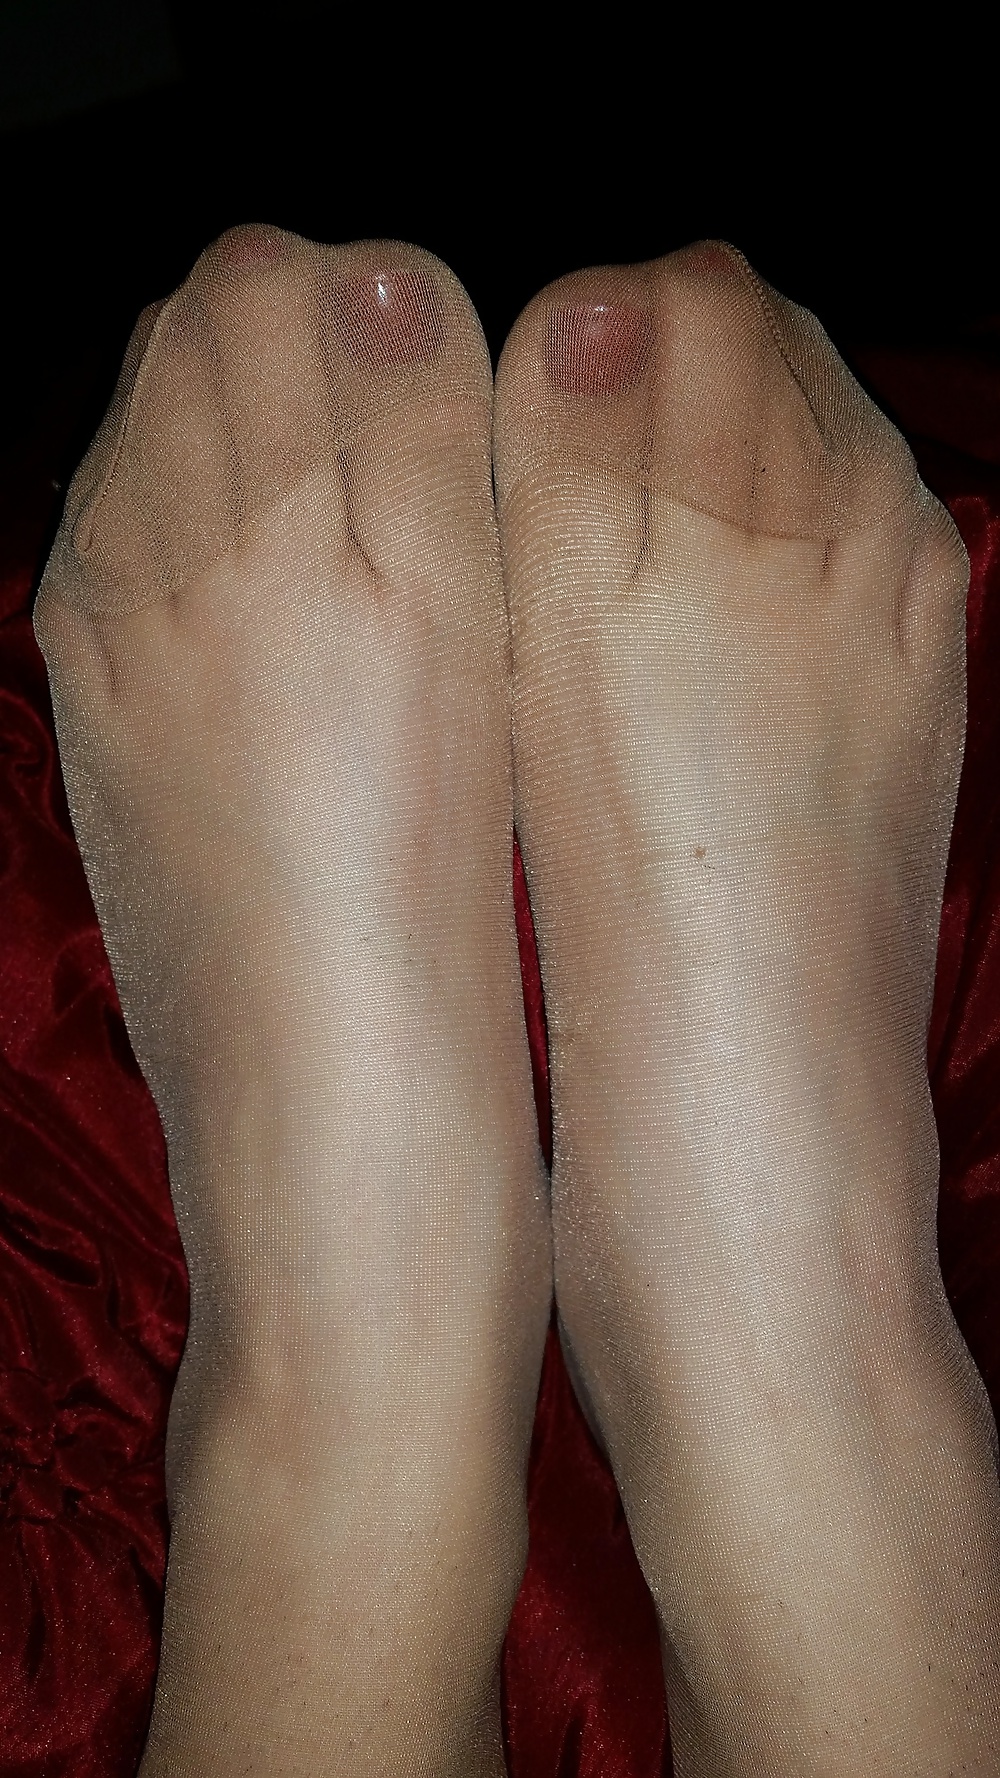 Pantyhose feet pict gal